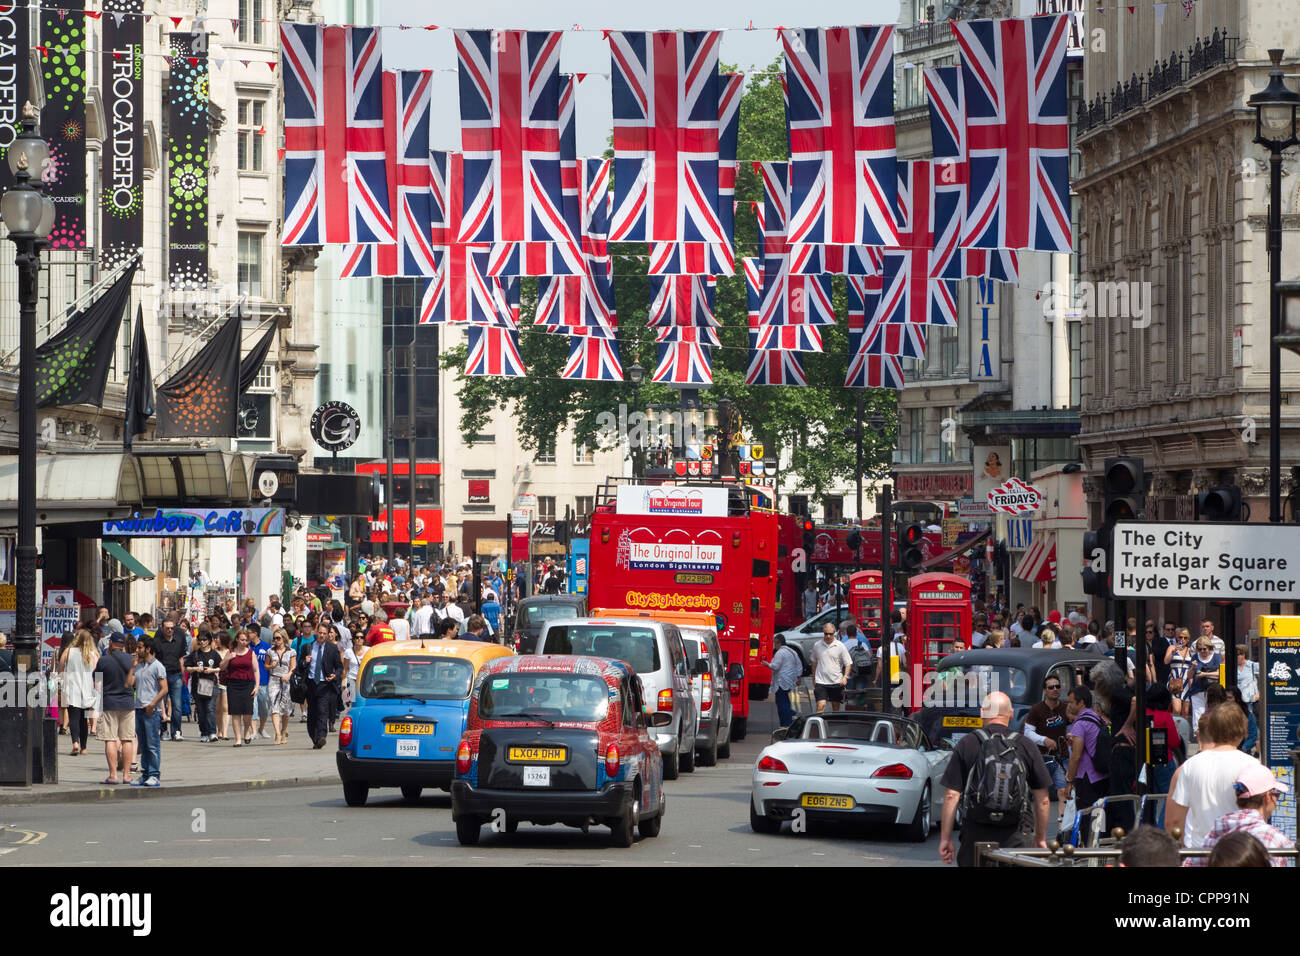 Drapeaux Union Jack sur l'affichage dans le centre de Londres, pendant les célébrations du Jubilé de diamant de la Reine, Londres, Royaume-Uni Banque D'Images